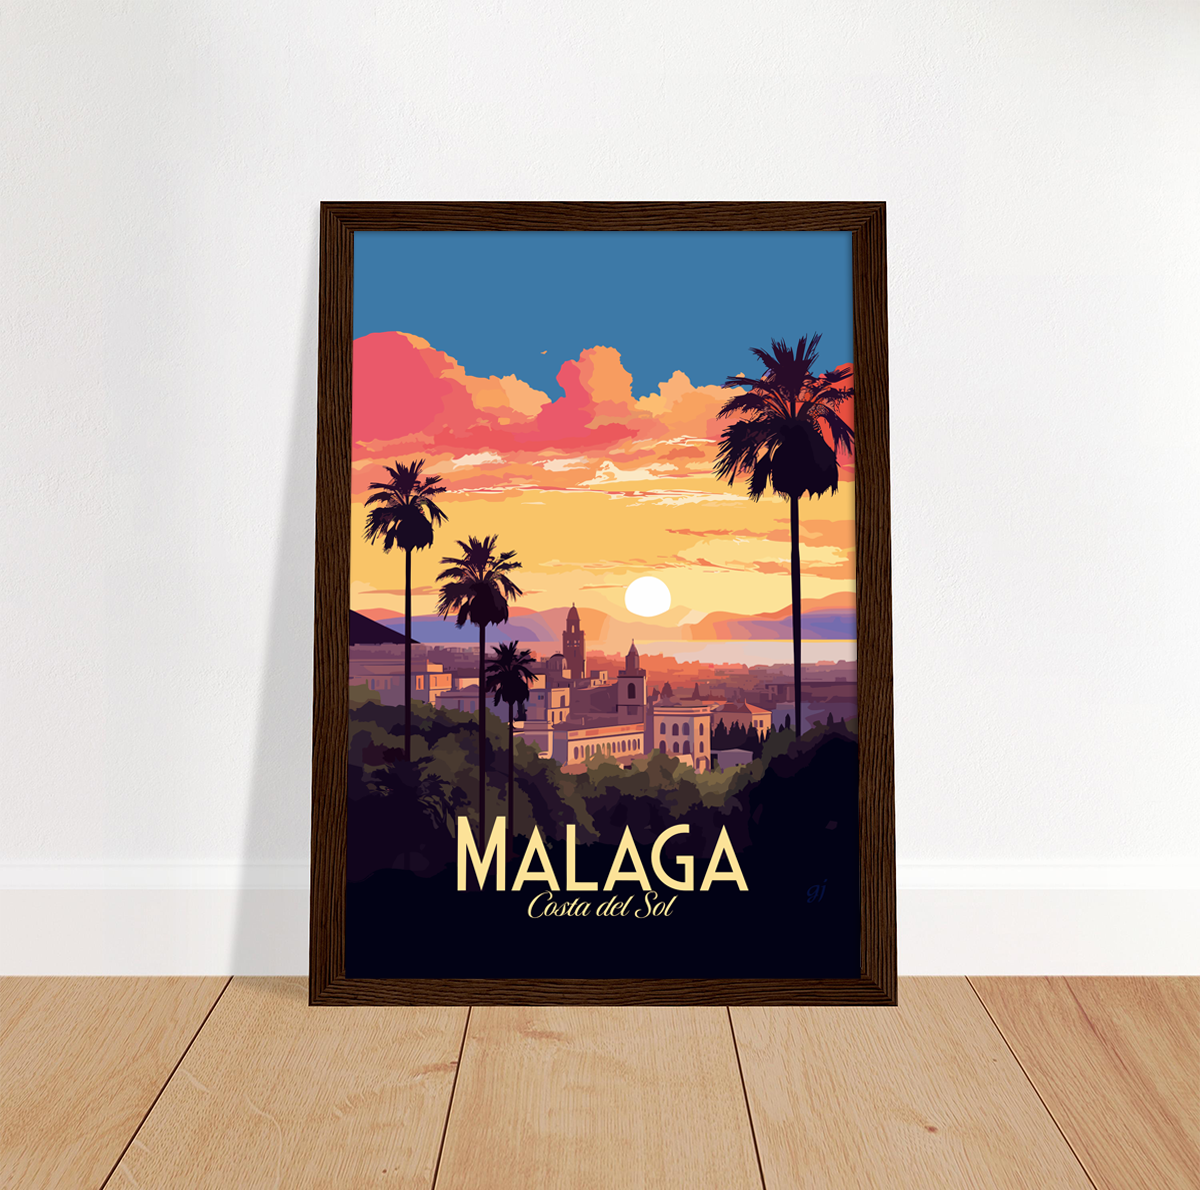 Malaga poster by bon voyage design